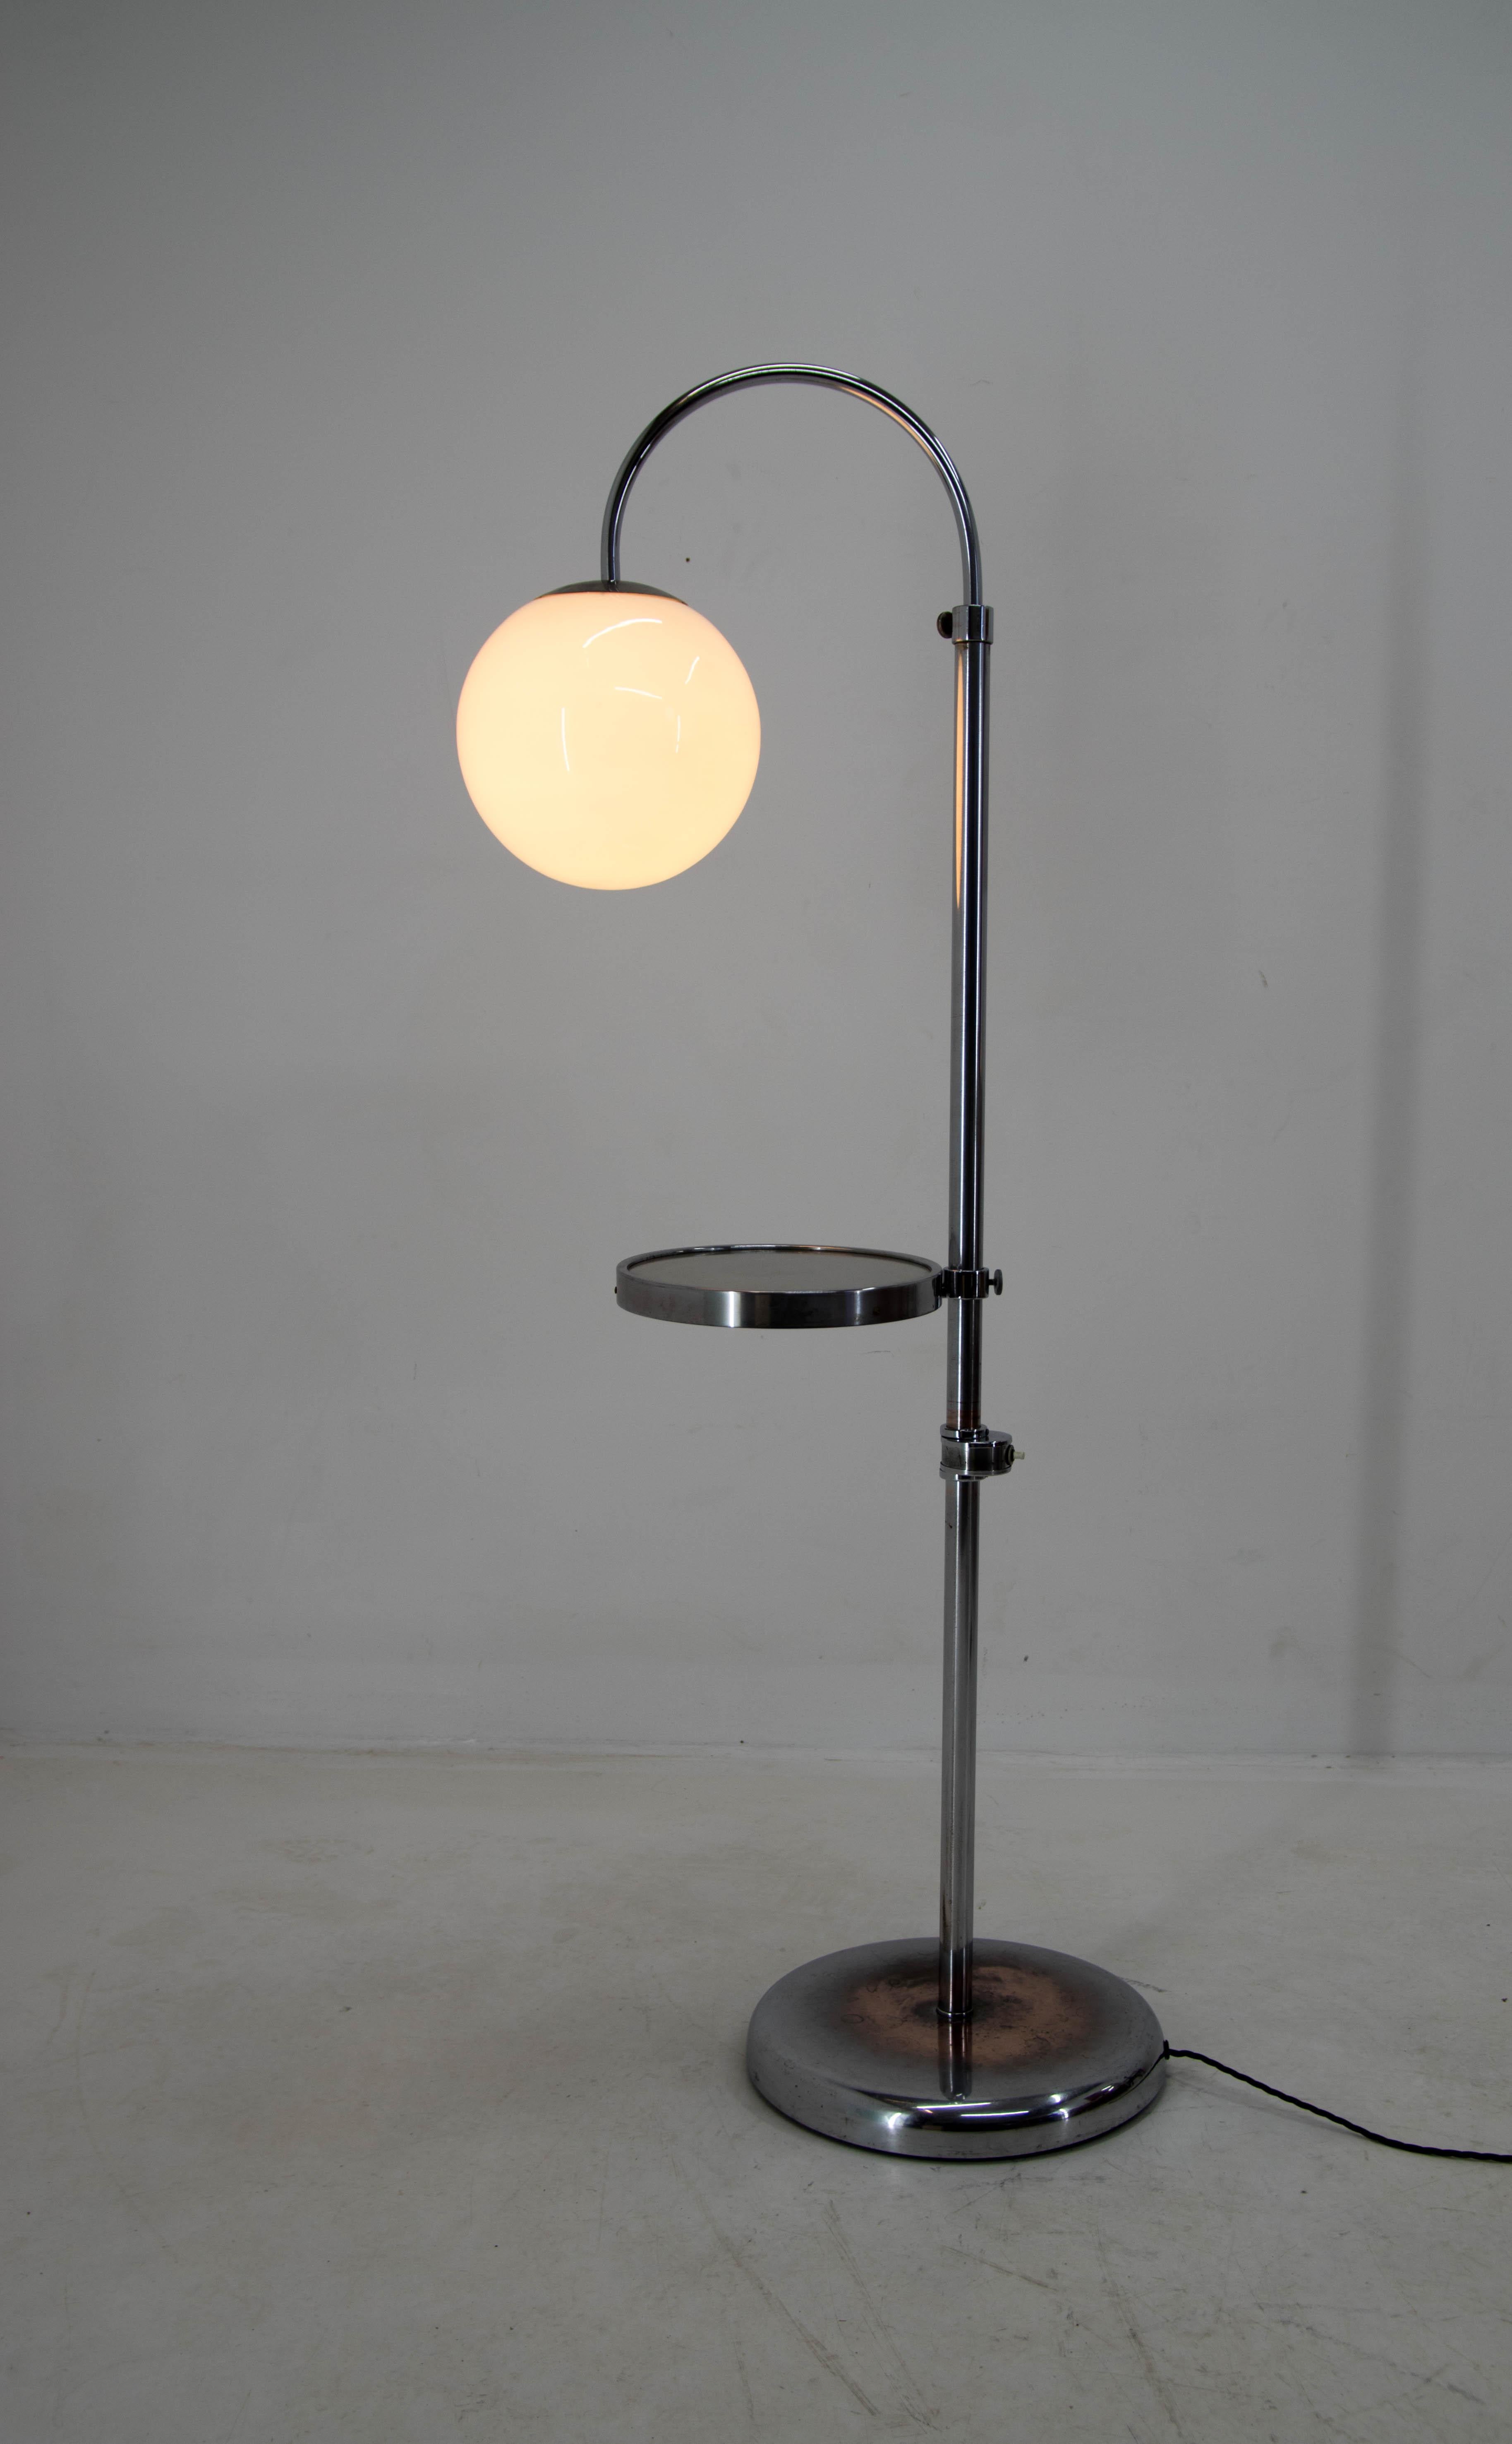 Art Deco Bauhaus or Functionalist Floor Lamp with Adjustable Height, 1940s